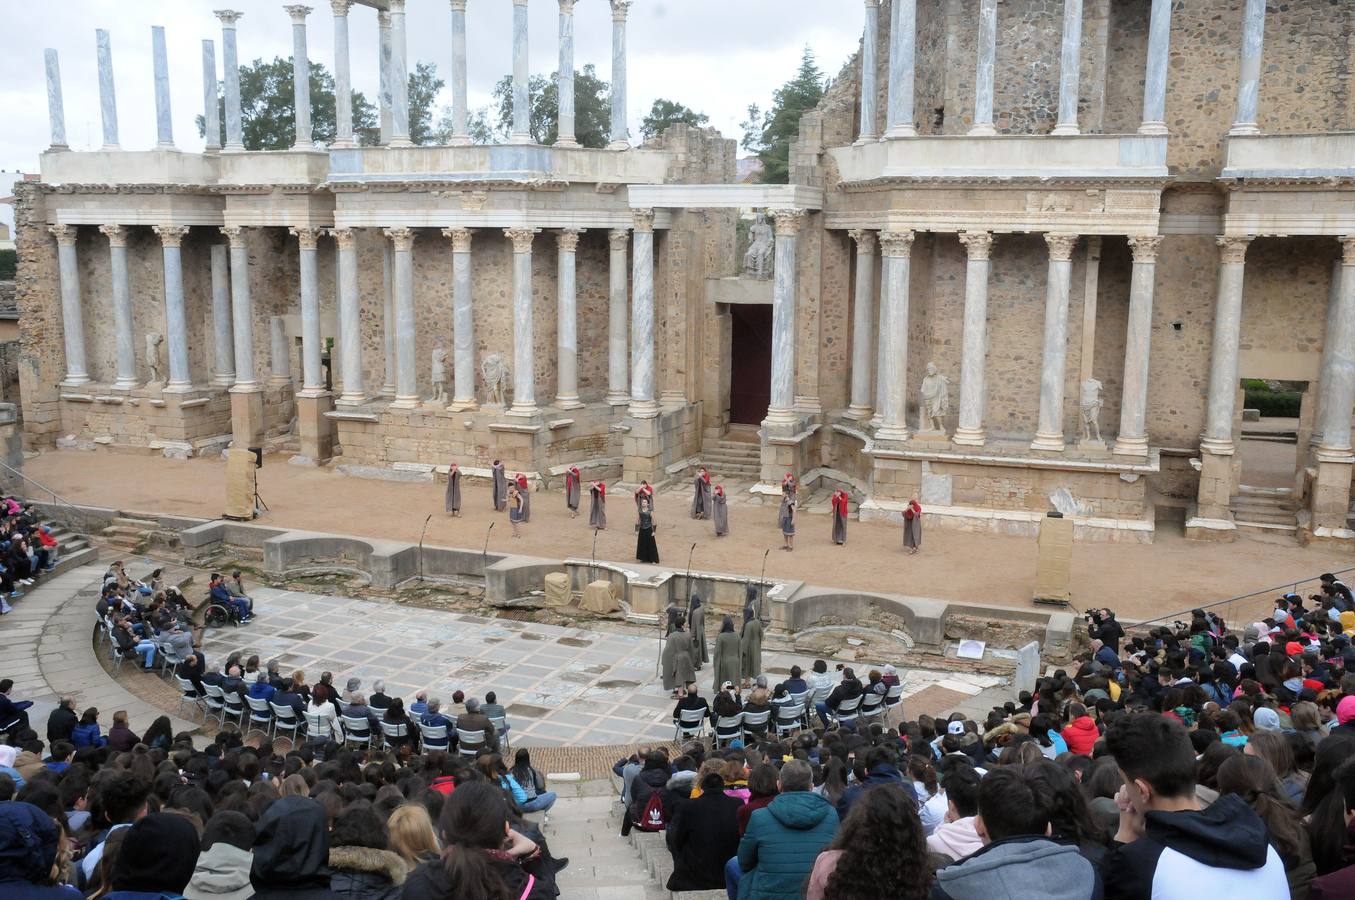 El Teatro Romano de Mérida ha acogido el espectáculo inaugural del XXII Festival Juvenil Europeo de Teatro Grecolatino con la obra 'Los Siete contra Tebas', versión y adaptación del texto de Esquilo, representado por el taller de teatro del IES 'Santa Eulalia', de Mérida, informa la Junta de Extremadura en una nota.